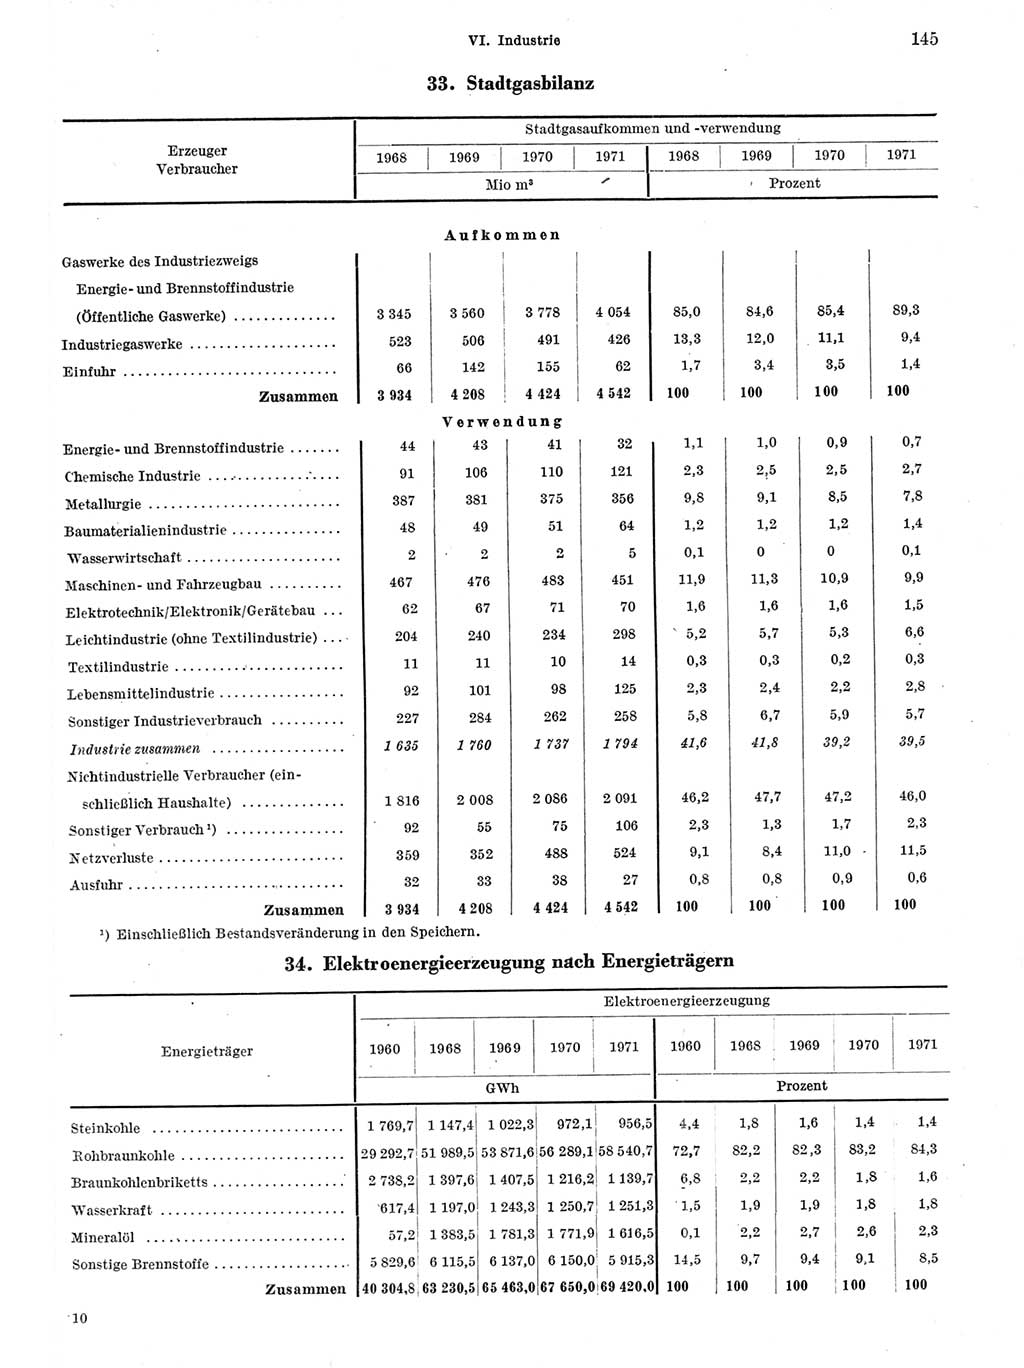 Statistisches Jahrbuch der Deutschen Demokratischen Republik (DDR) 1972, Seite 145 (Stat. Jb. DDR 1972, S. 145)